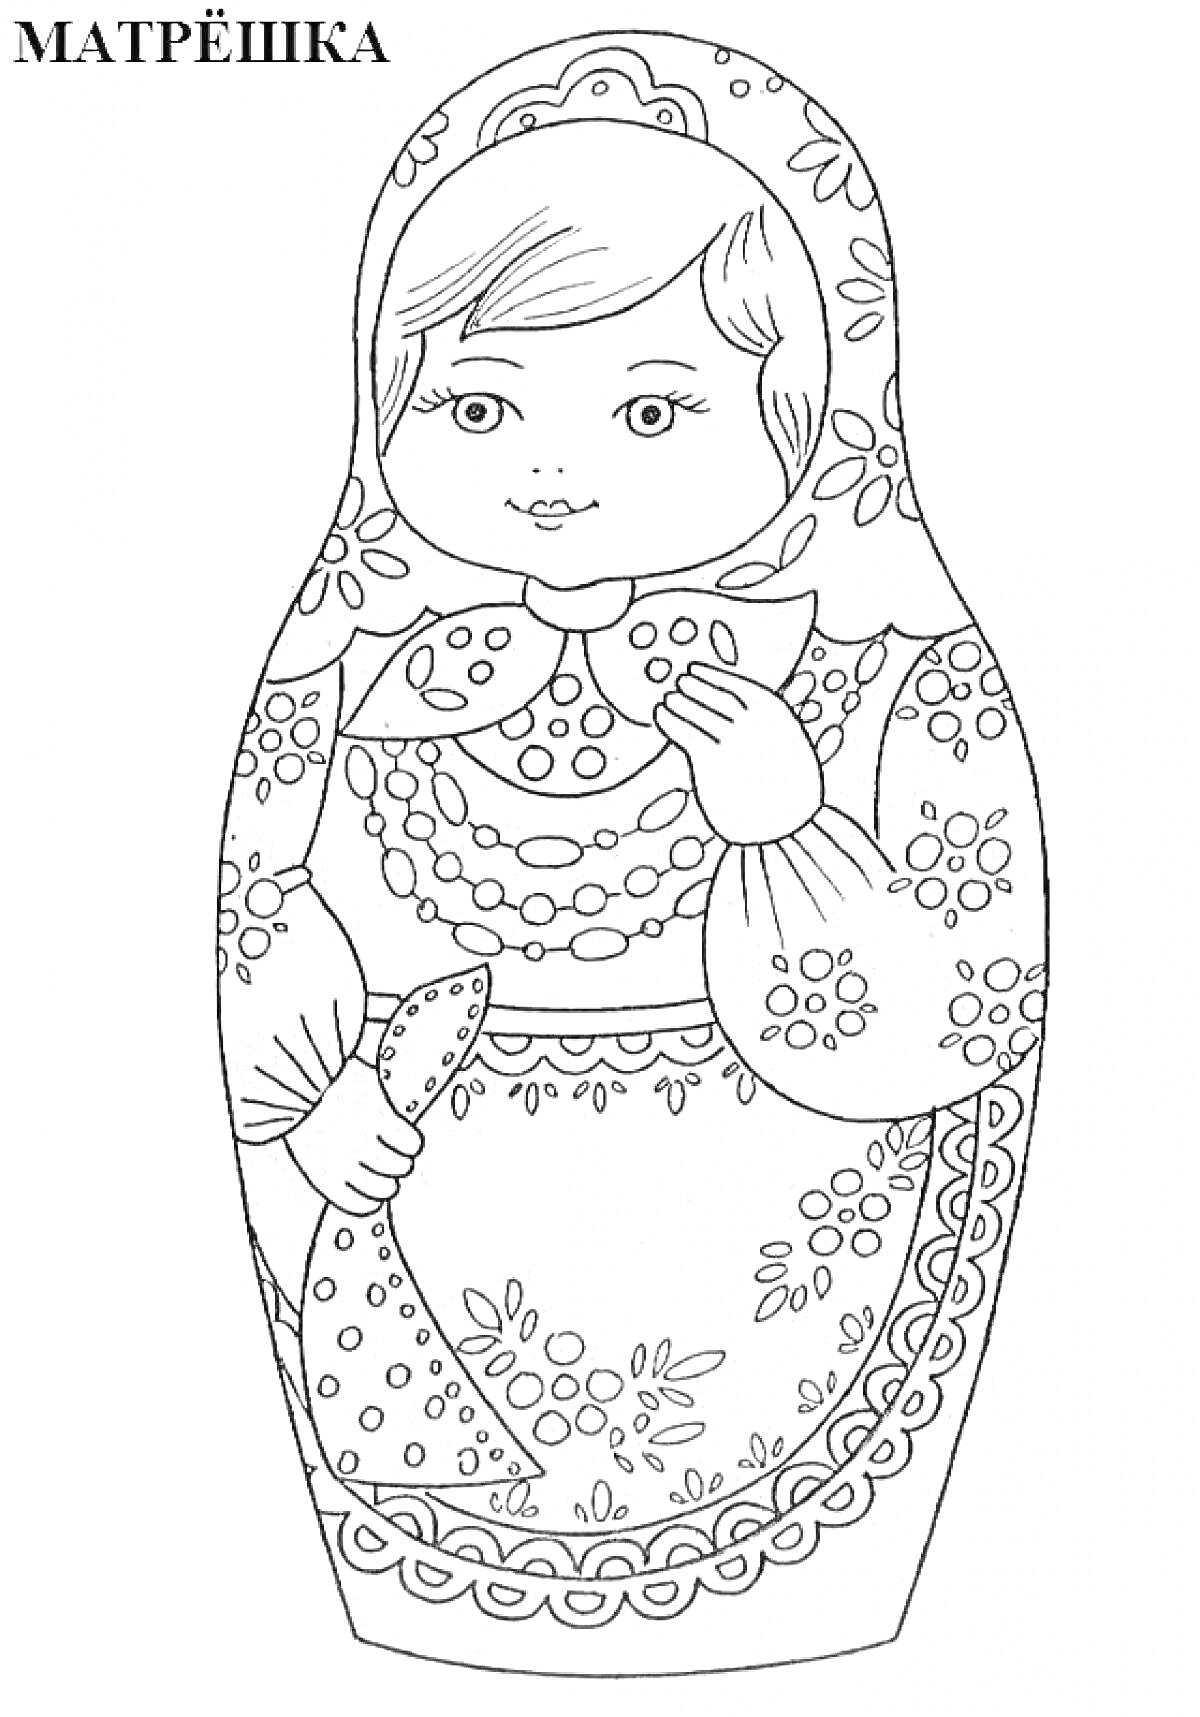 Раскраска Матрешка с узорами, платок на голове, традиционная русская кукла